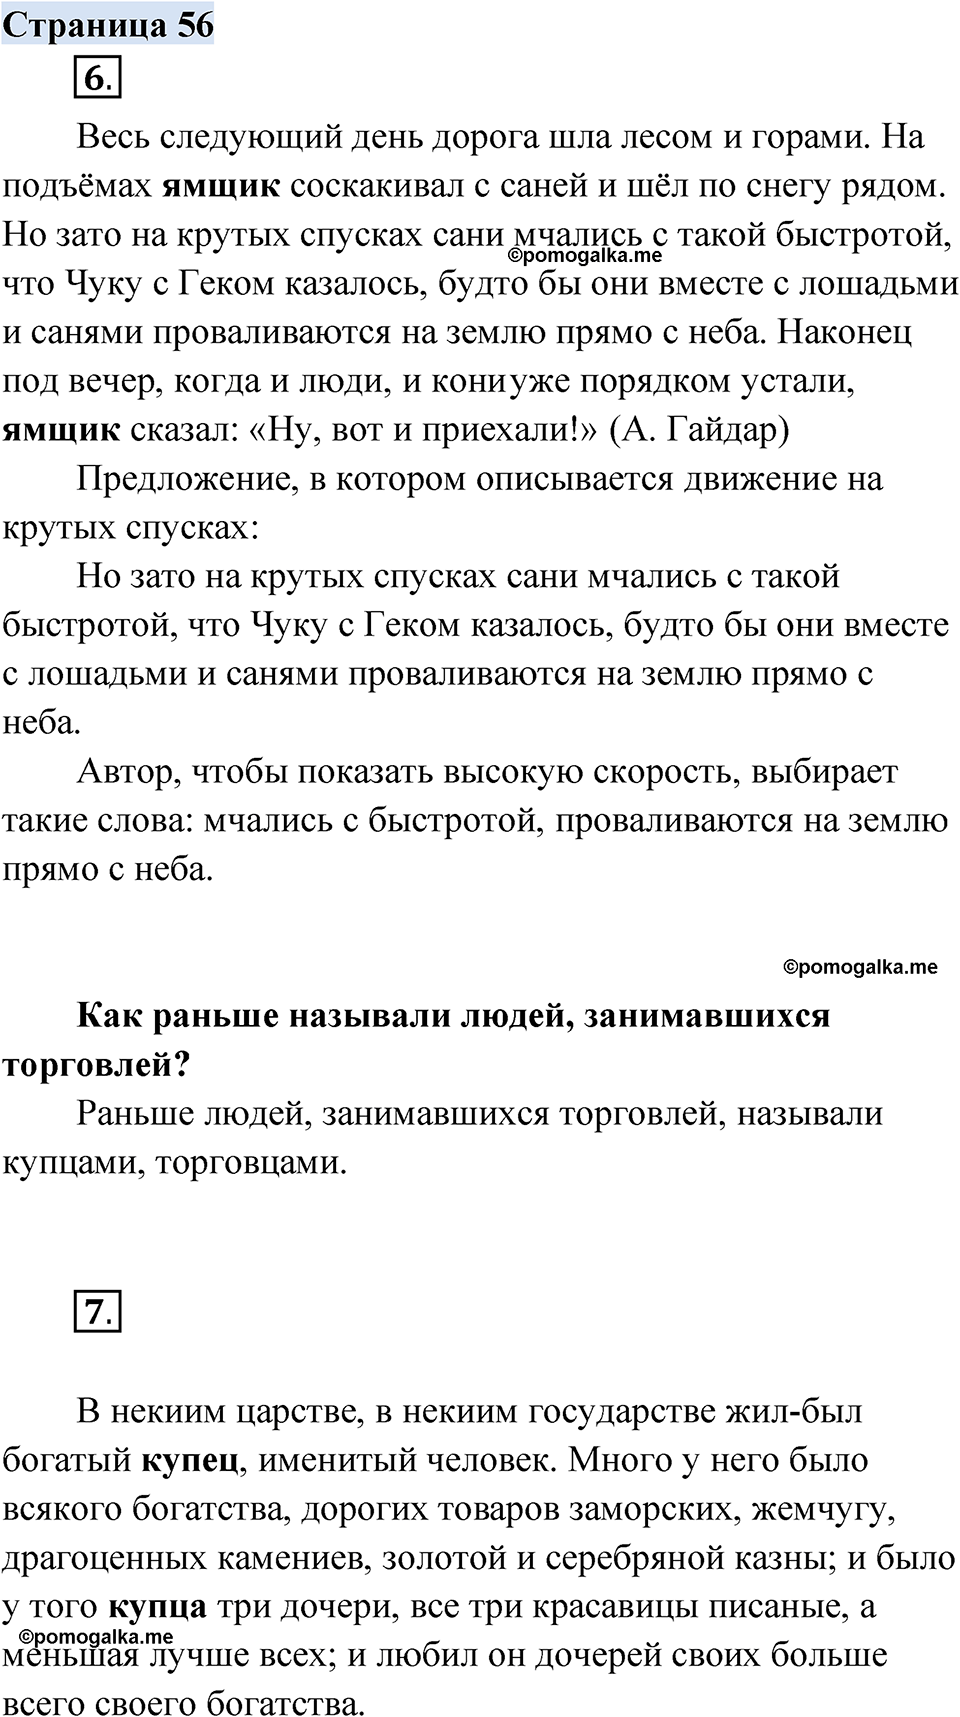 страница 56 русский родной язык 3 класс Александрова 2022 год